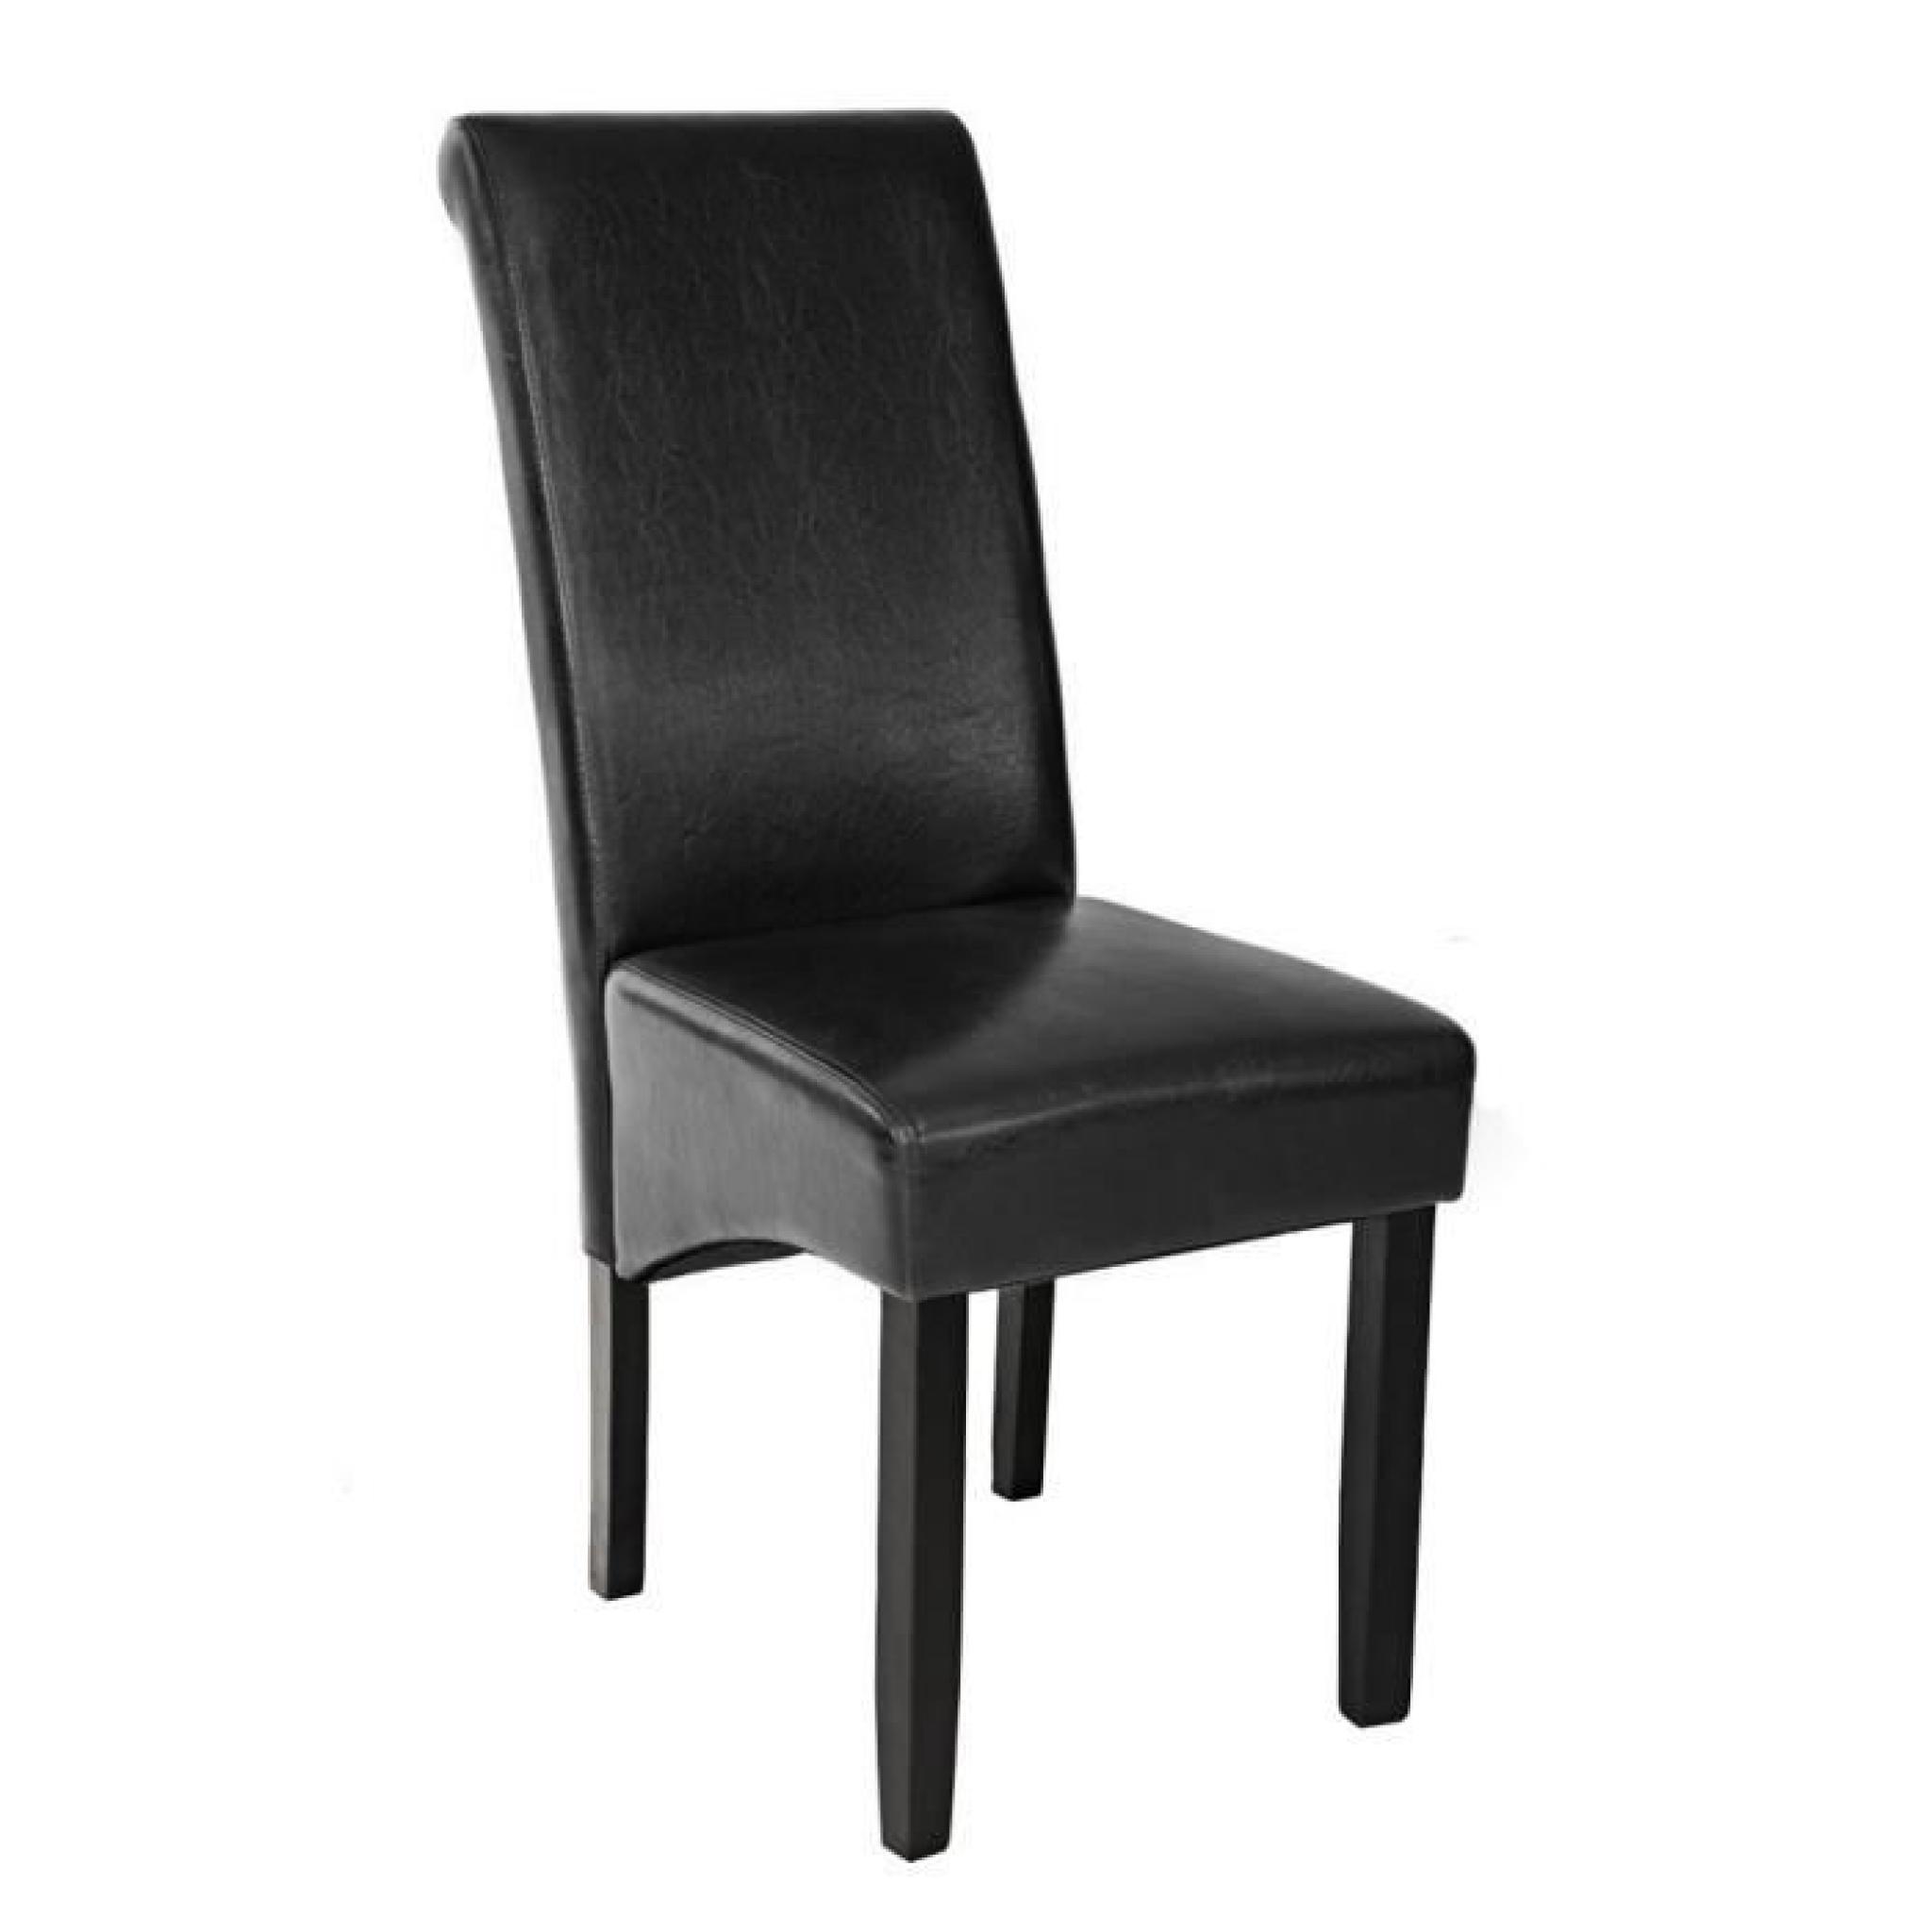 Chaise de salle à manger design 105 cm Noir, Chaise de Salon, Meuble de salon, Mobilier de Salon TECTAKE New